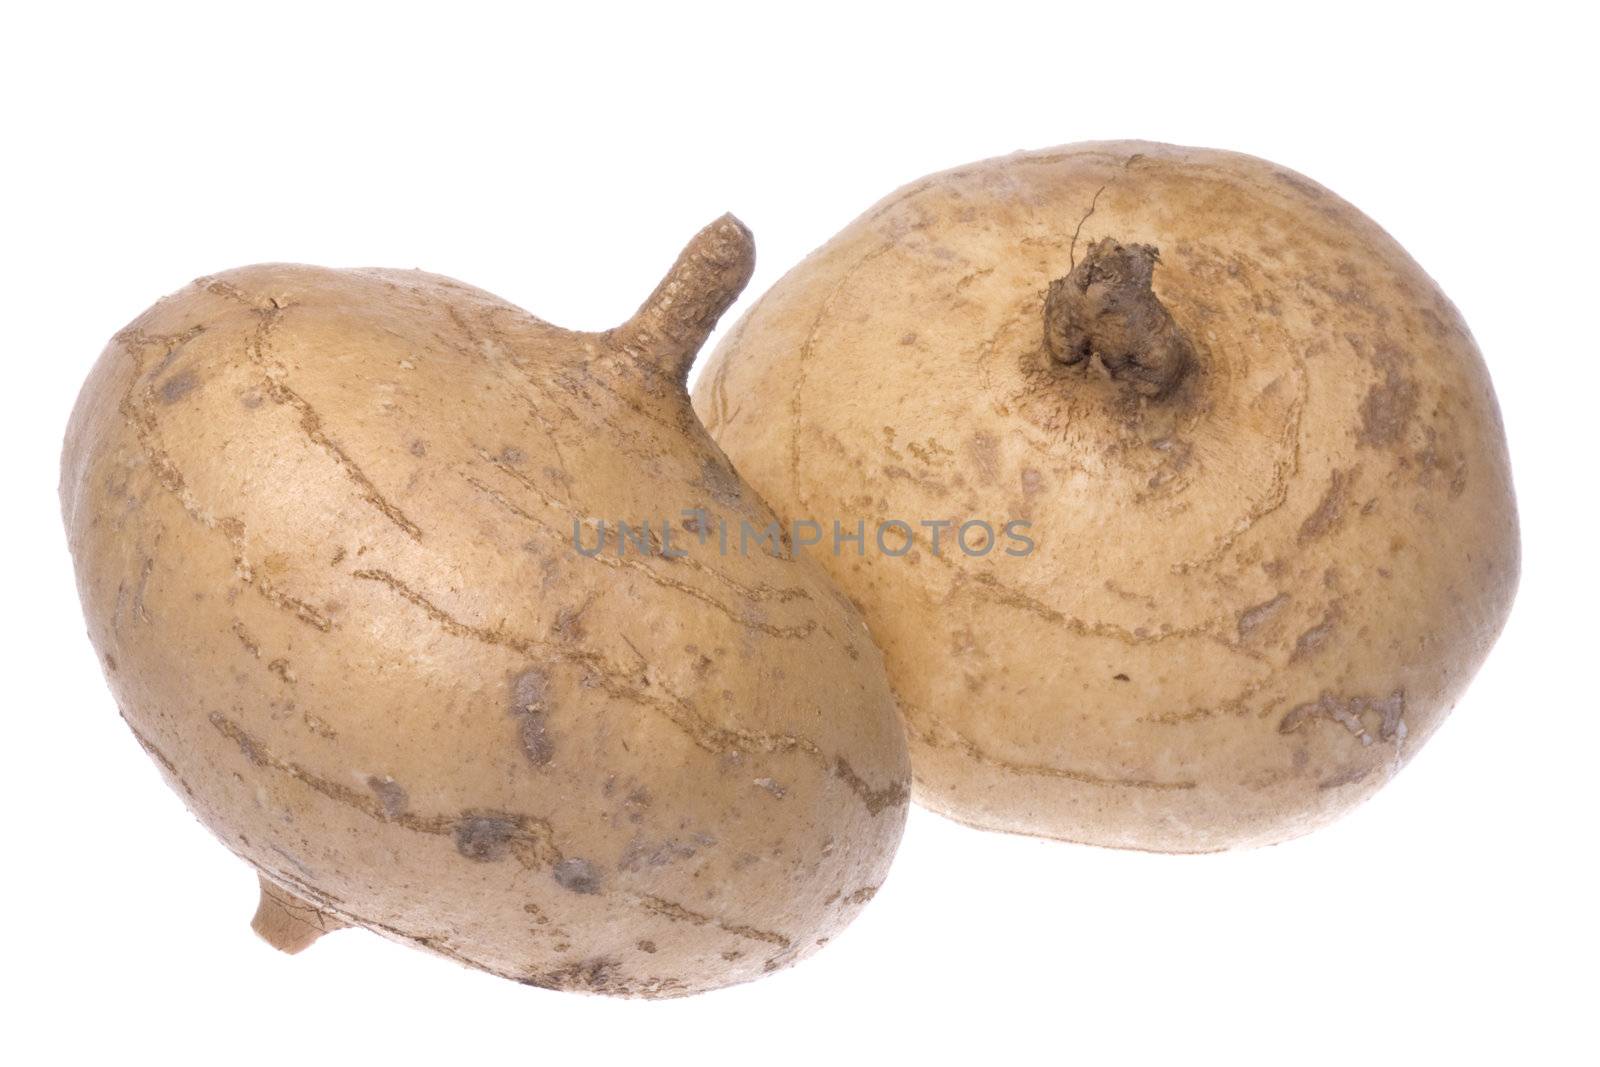 Isolated image of fresh turnips.